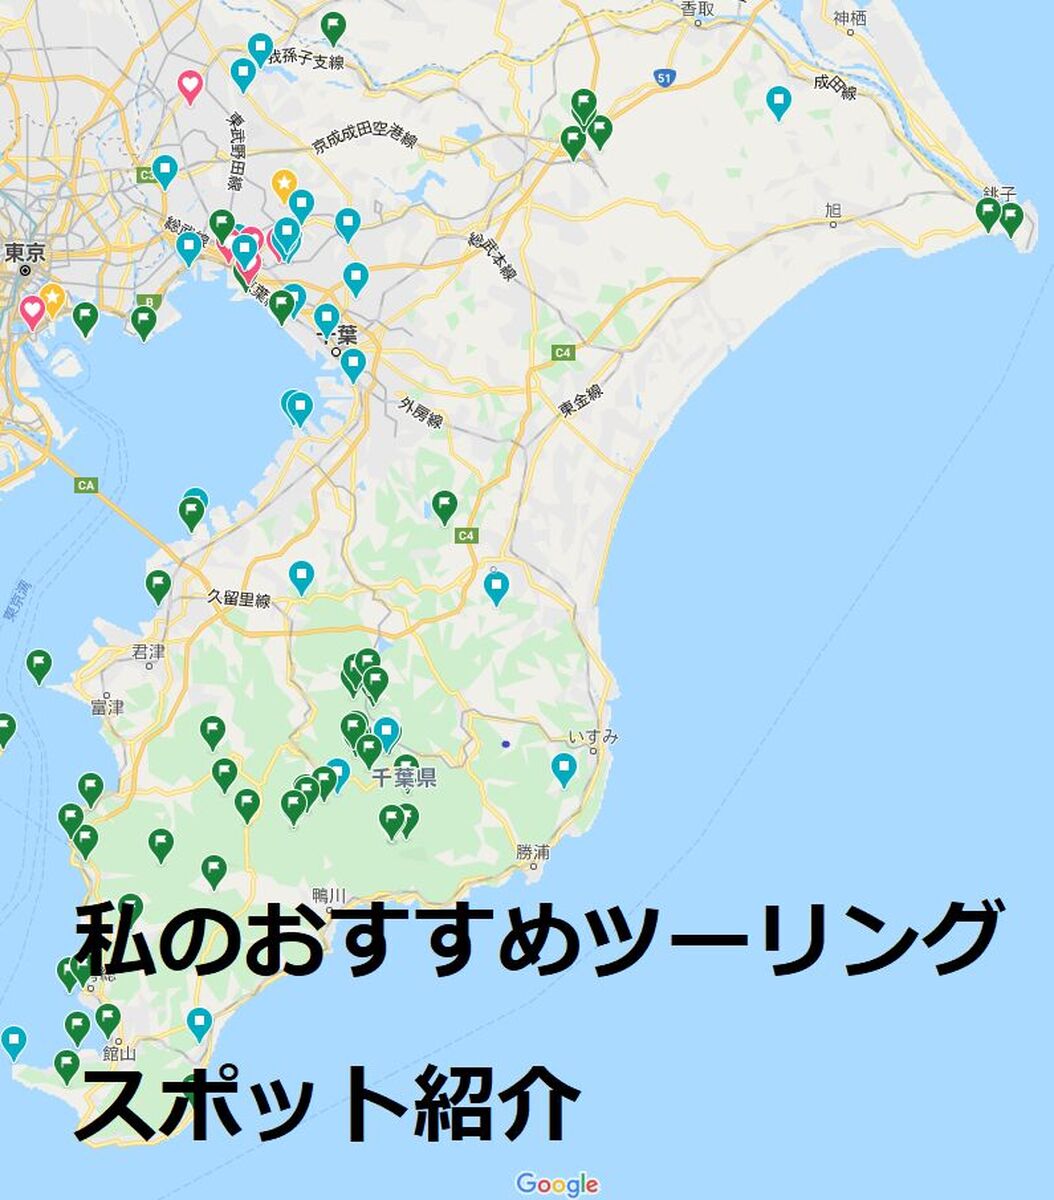 私のおすすめ千葉県ツーリングスポット ウェビックコミュニティ